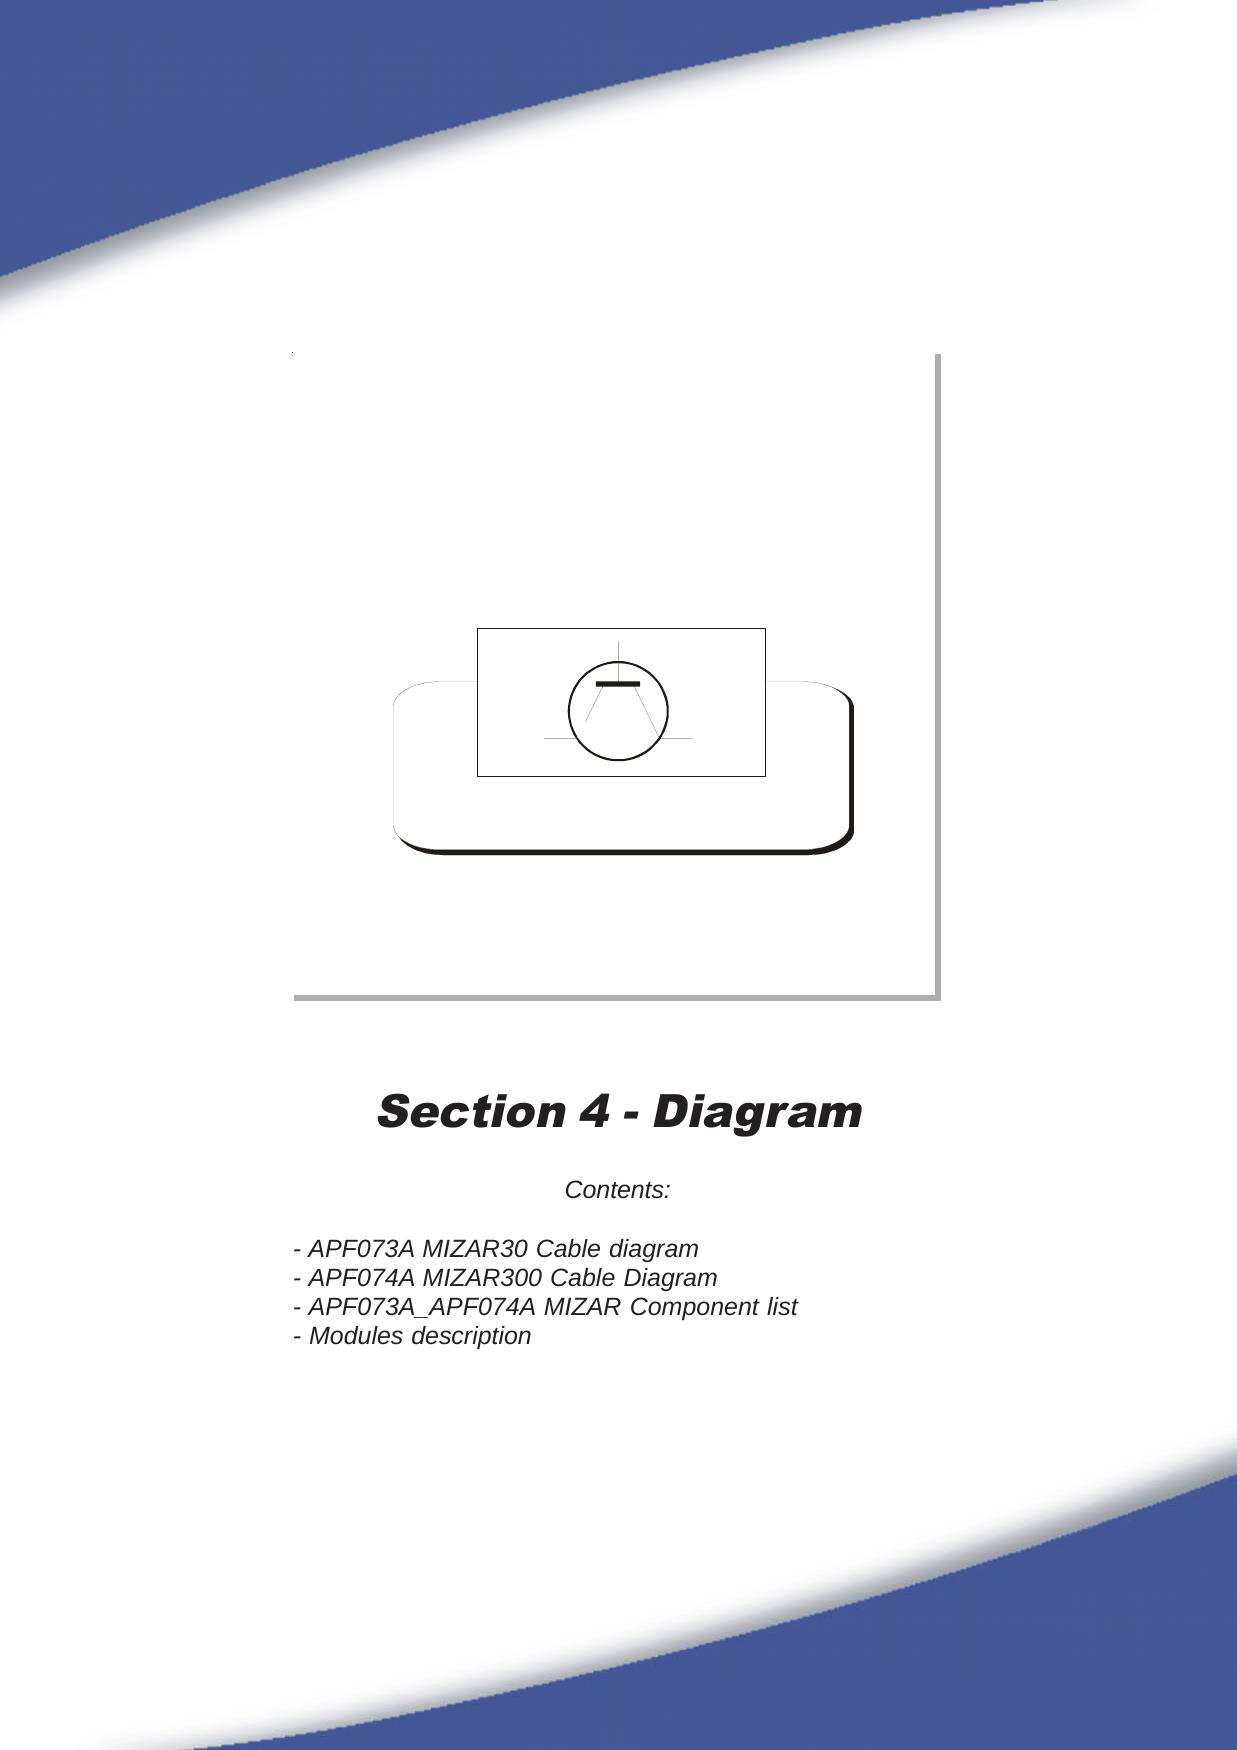 35Section 4 - DiagramContents:- APF073A MIZAR30 Cable diagram- APF074A MIZAR300 Cable Diagram- APF073A_APF074A MIZAR Component list- Modules description